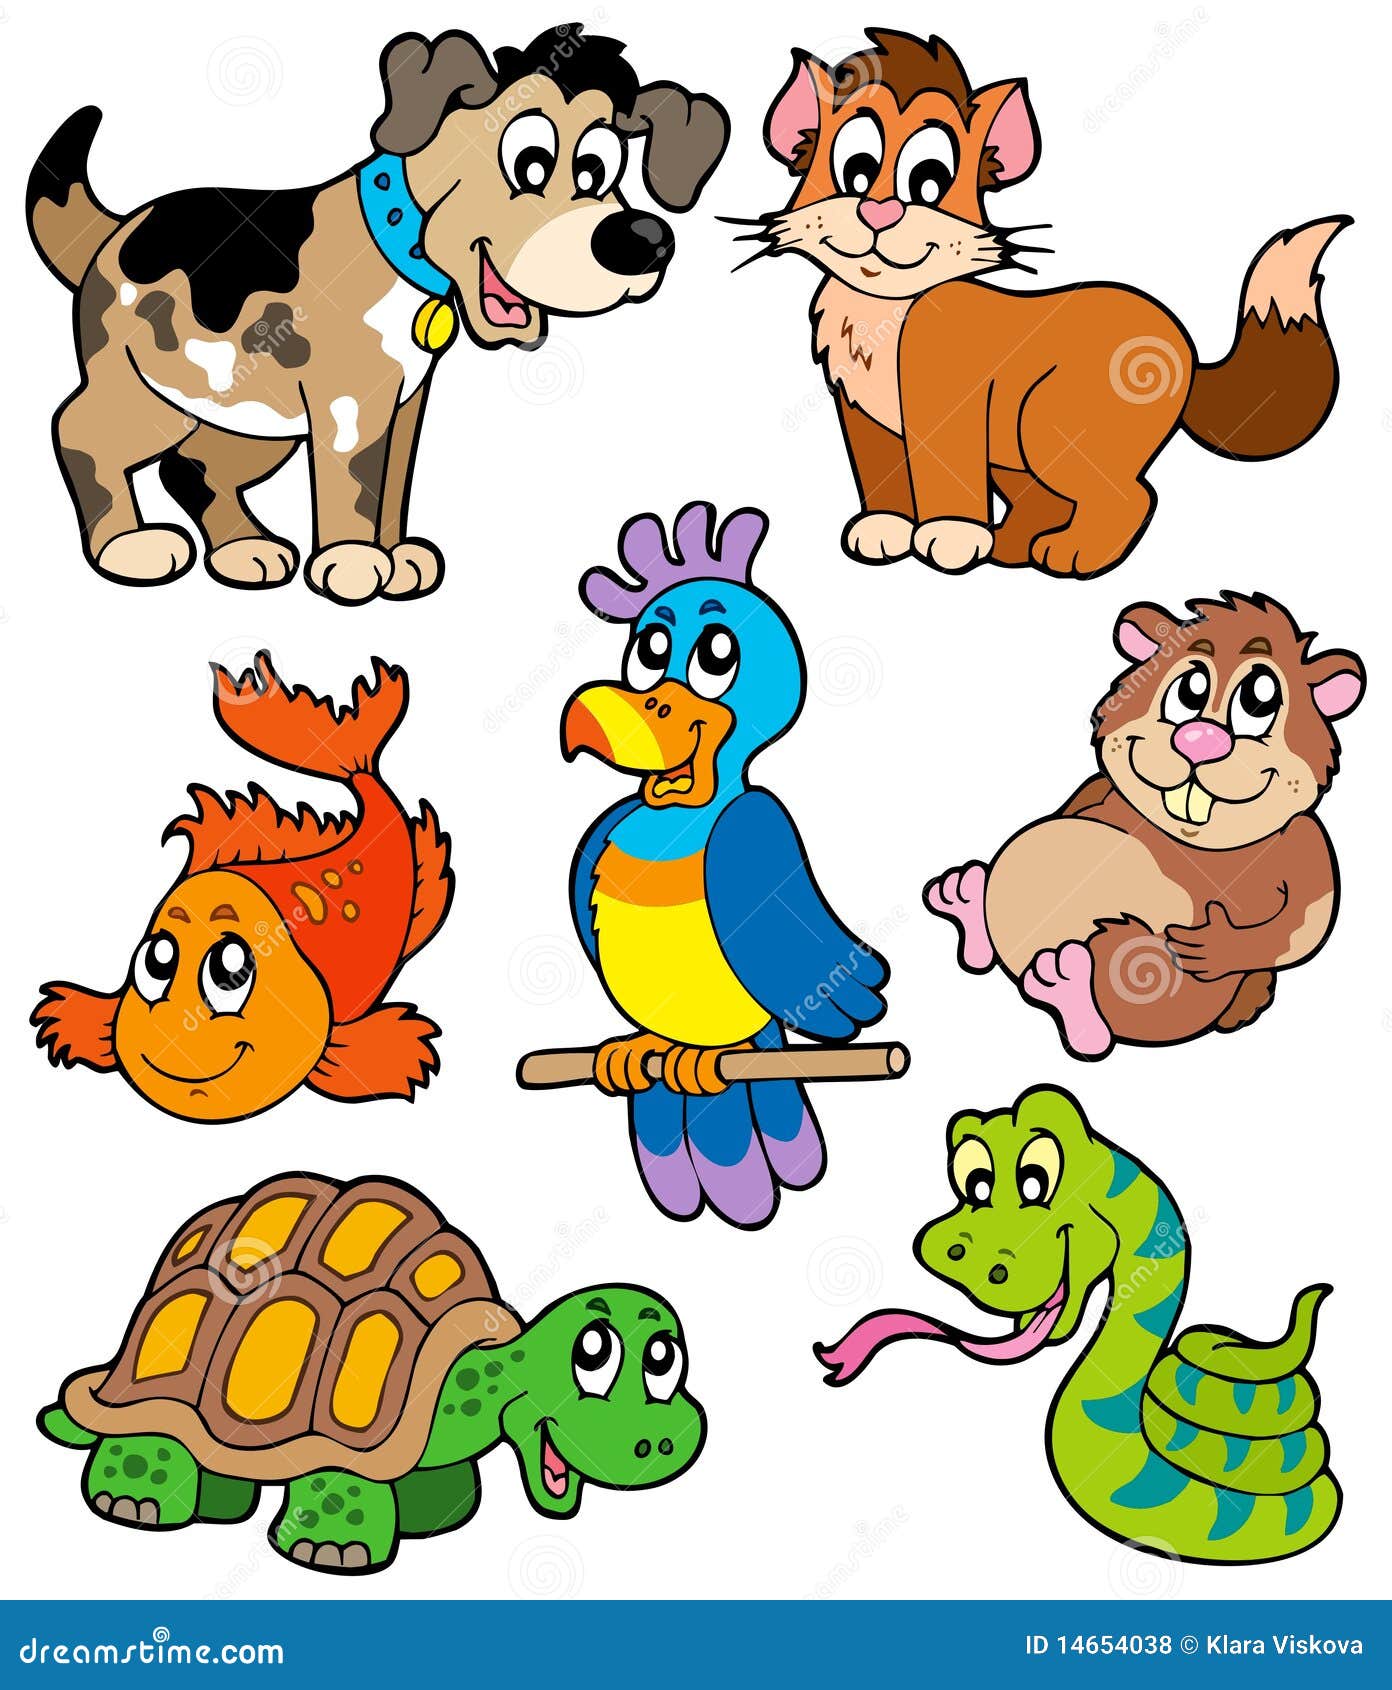 Pet Cartoons Collection Royalty Free Stock Photos - Image: 14654038